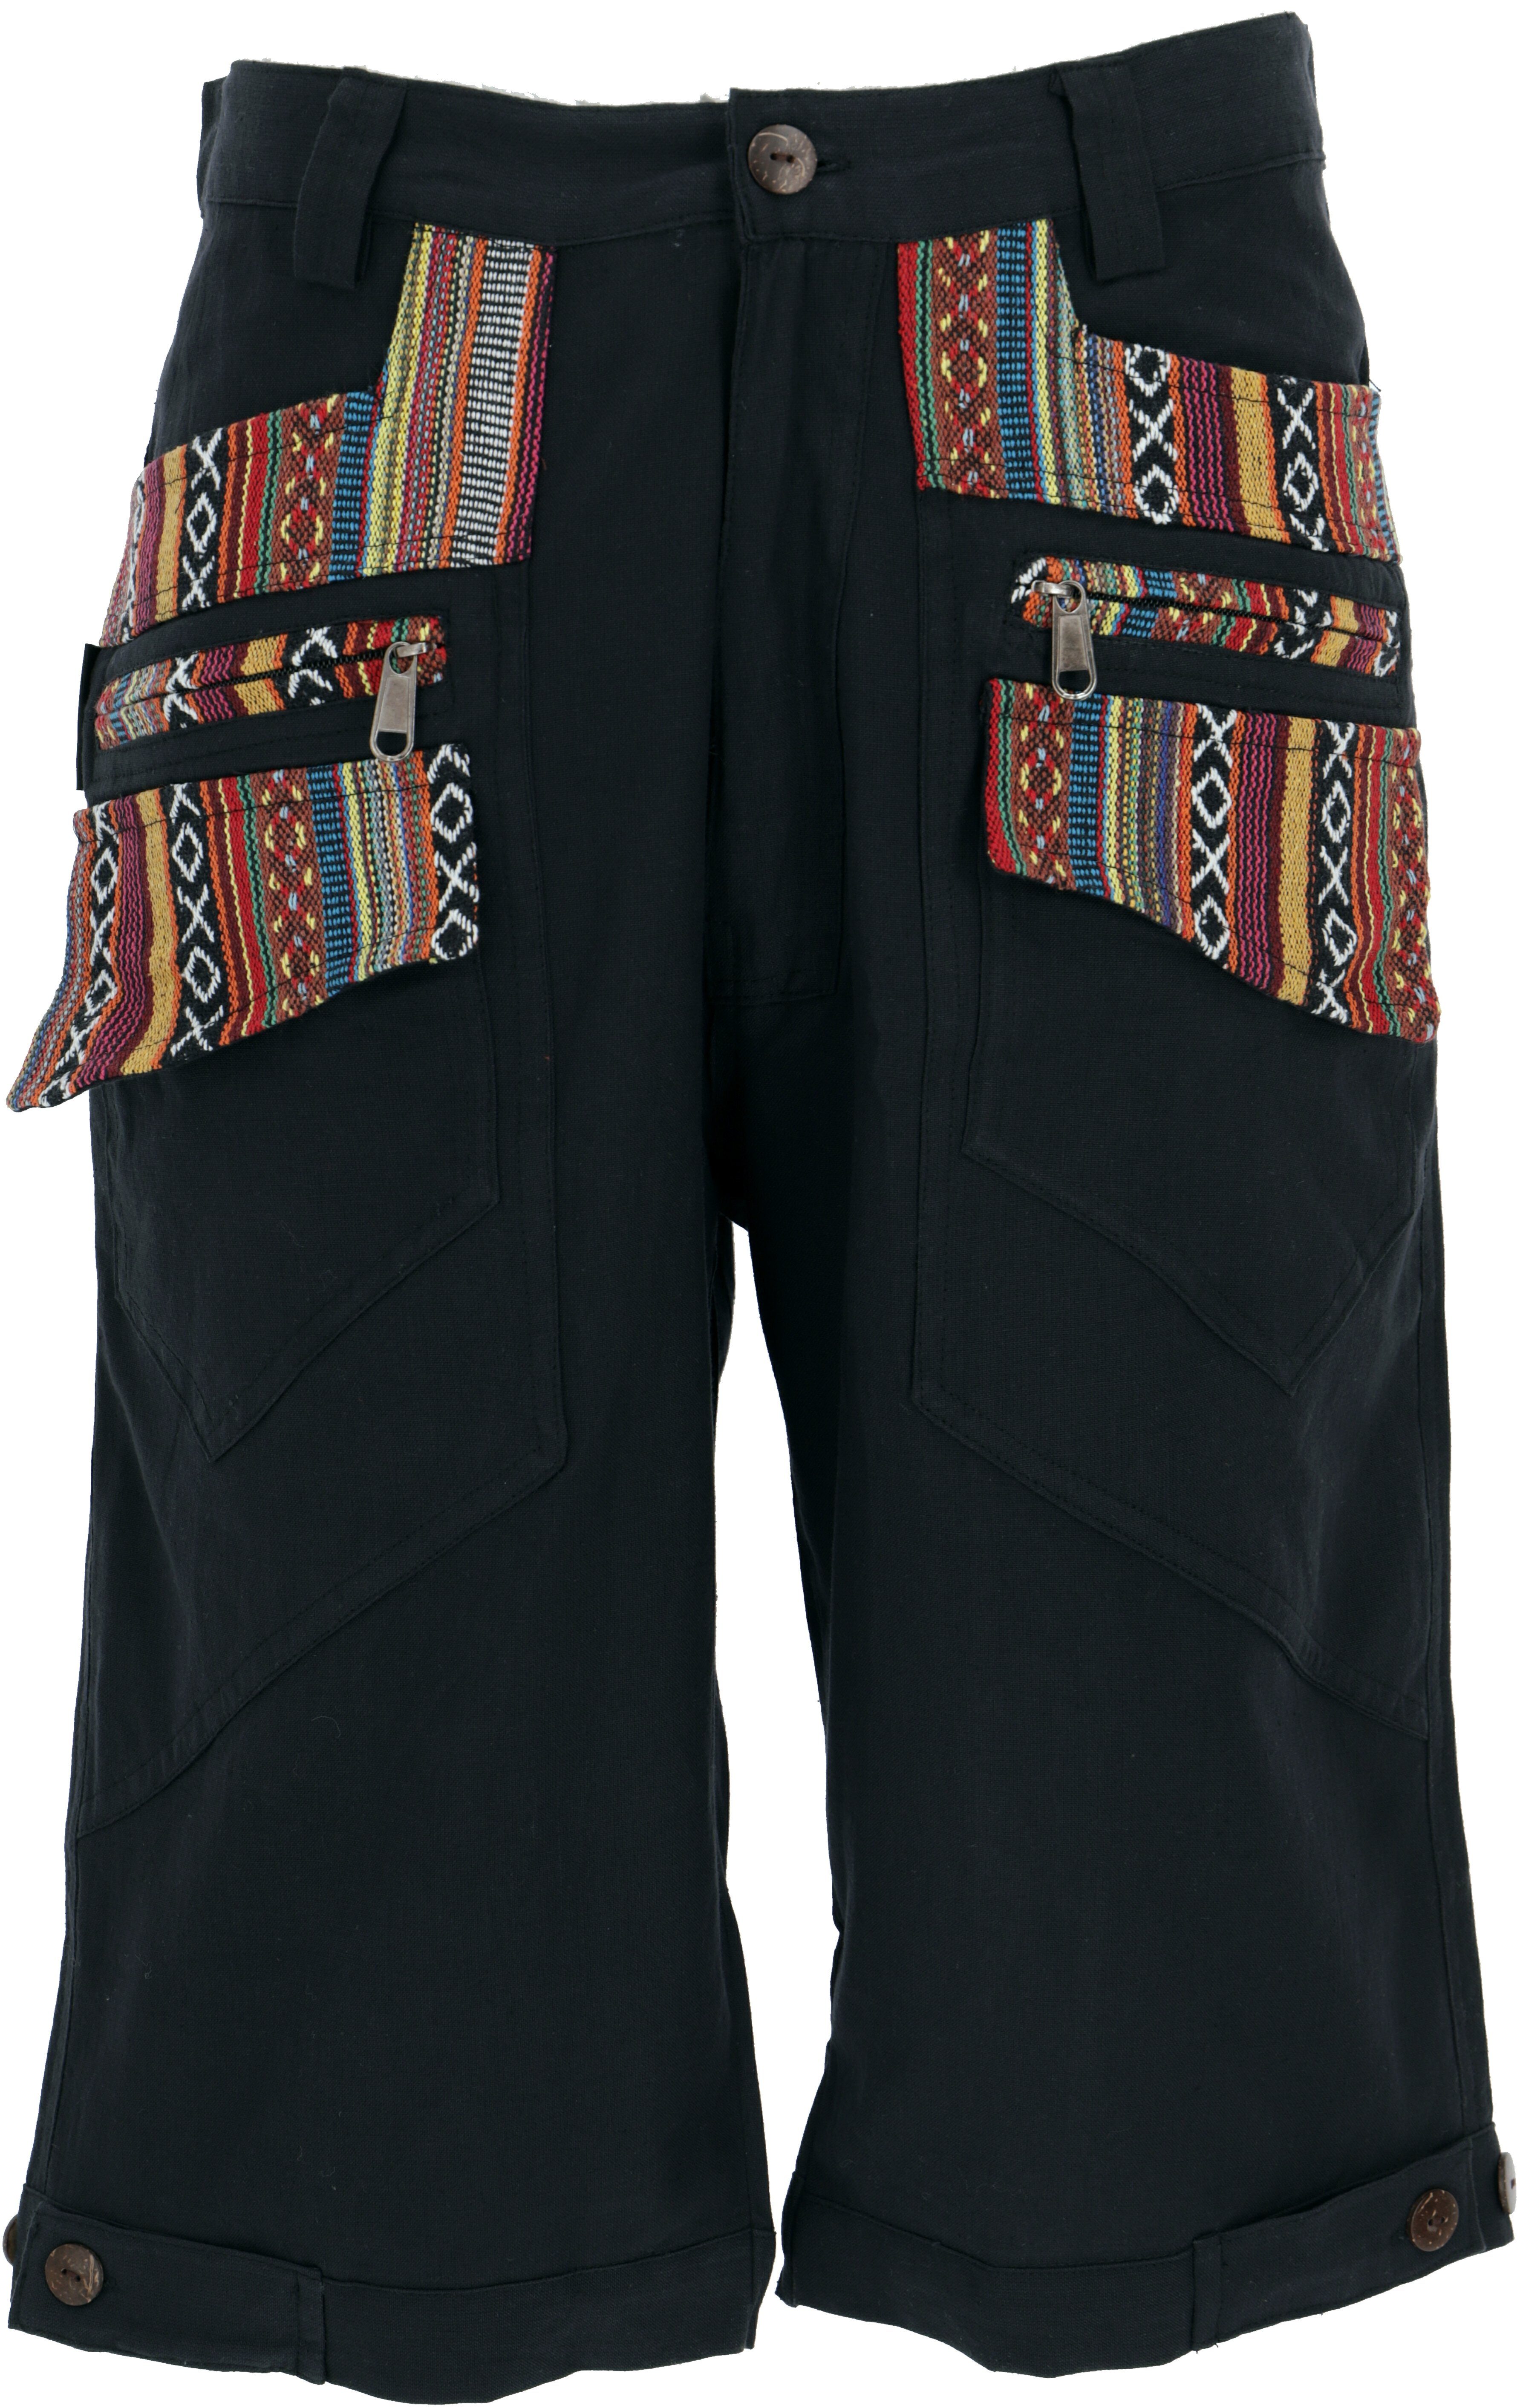 - Kurze Style, Goa Goa Ethno Shorts Bekleidung Guru-Shop Hose, alternative schwarz Relaxhose Yogahose,